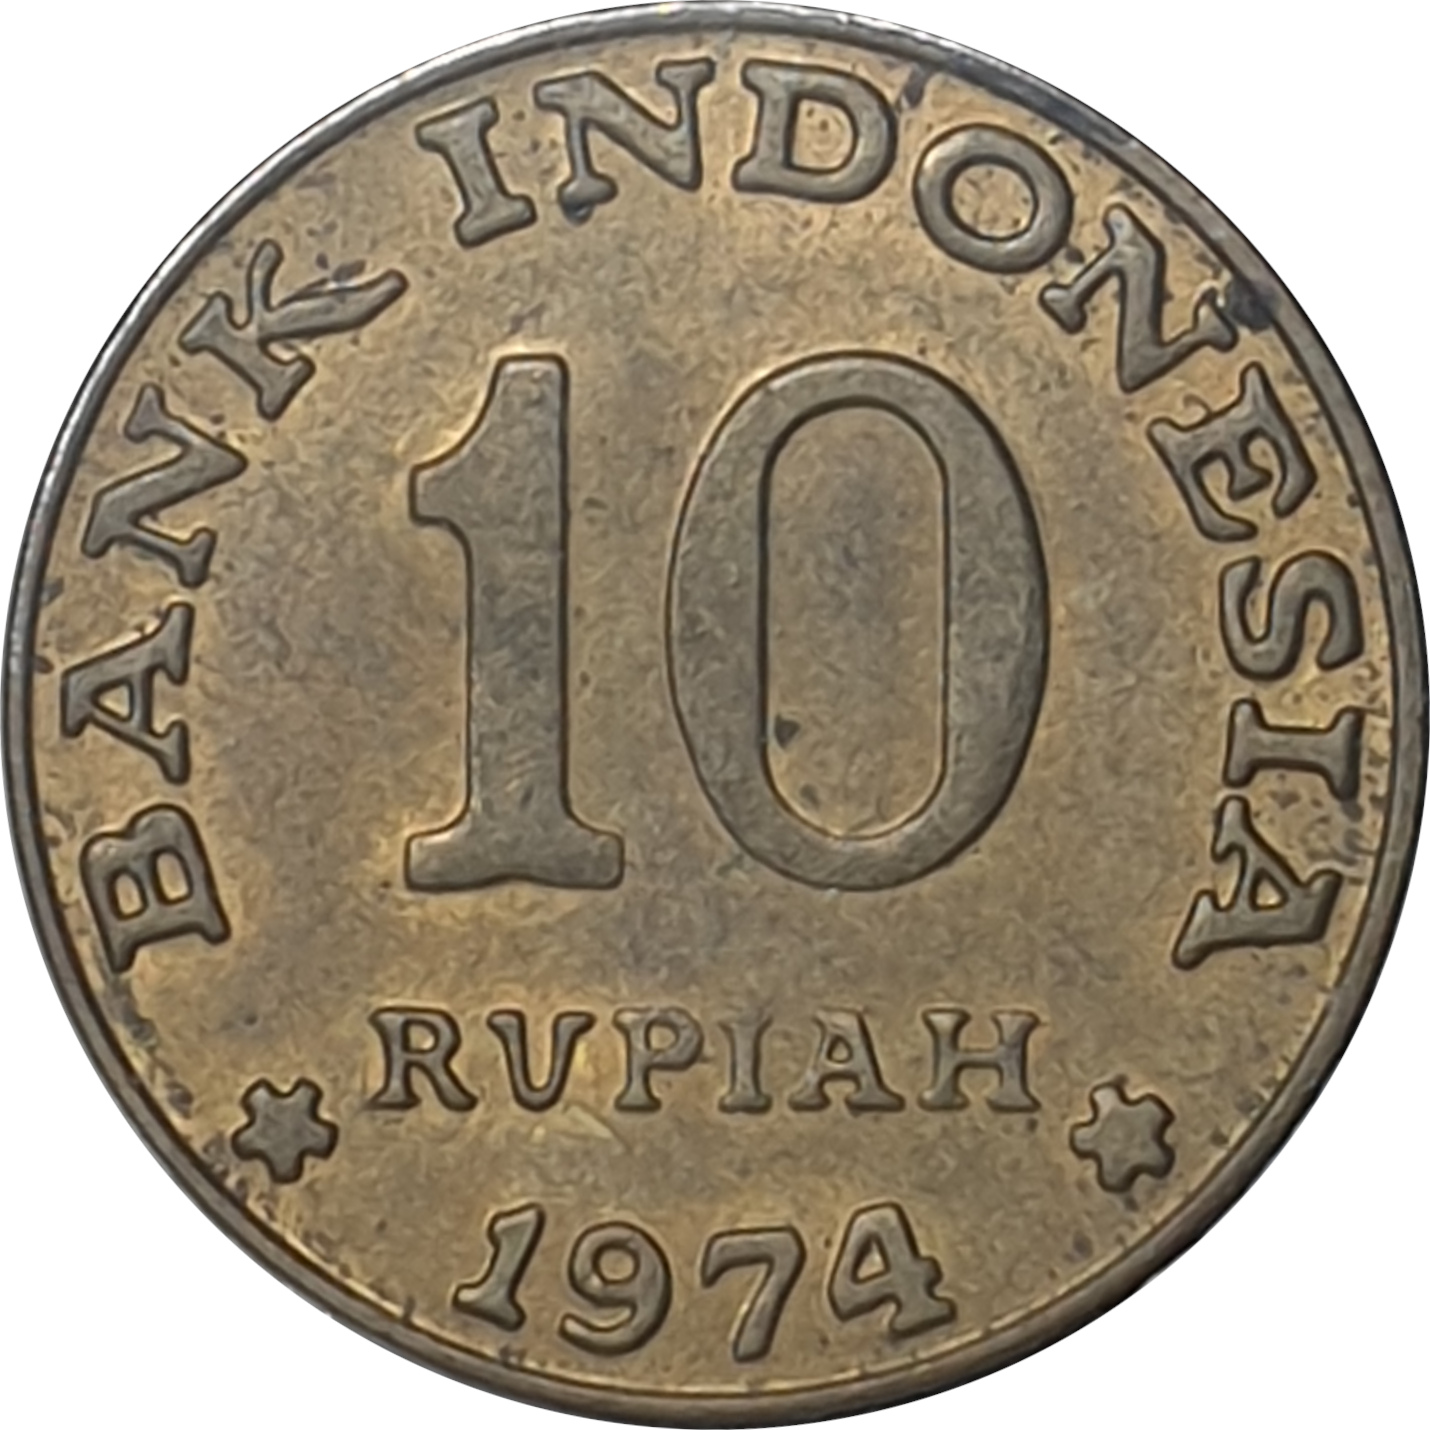 10 rupiah - FAO - Brass clad steel